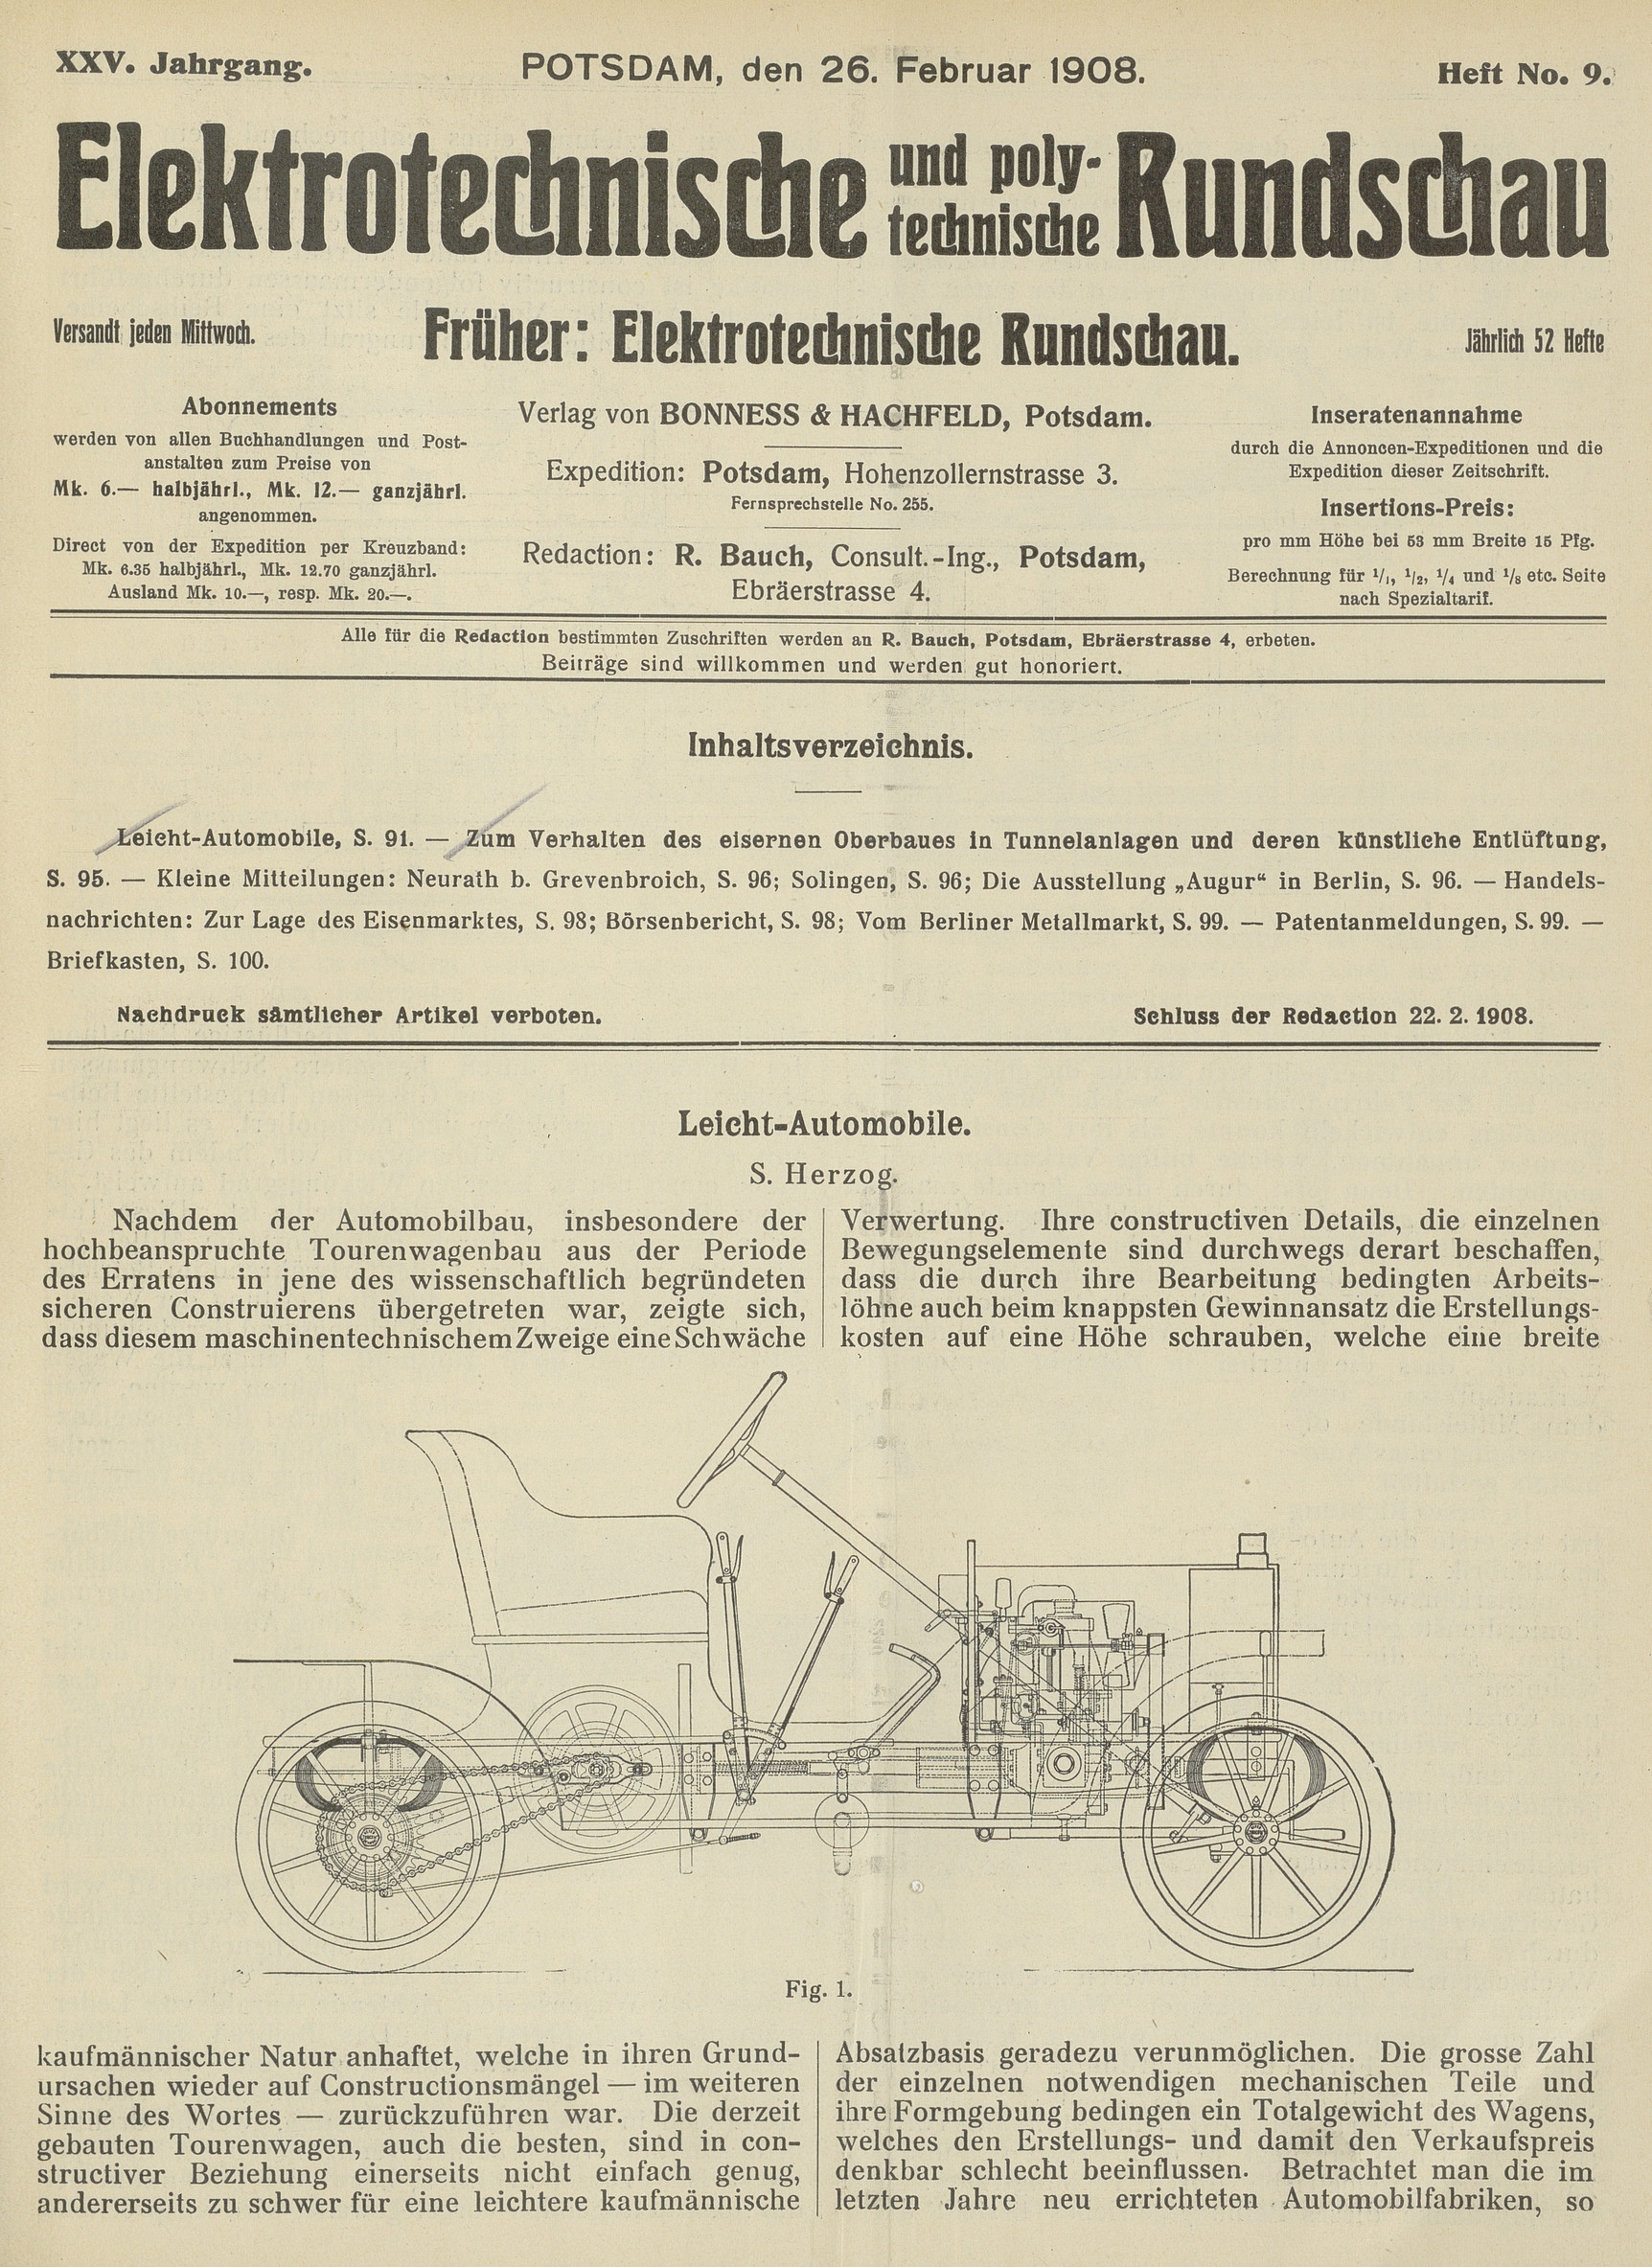 Elektrotechnische und polytechnische Rundschau, XXV. Jahrgang, Heft No. 9